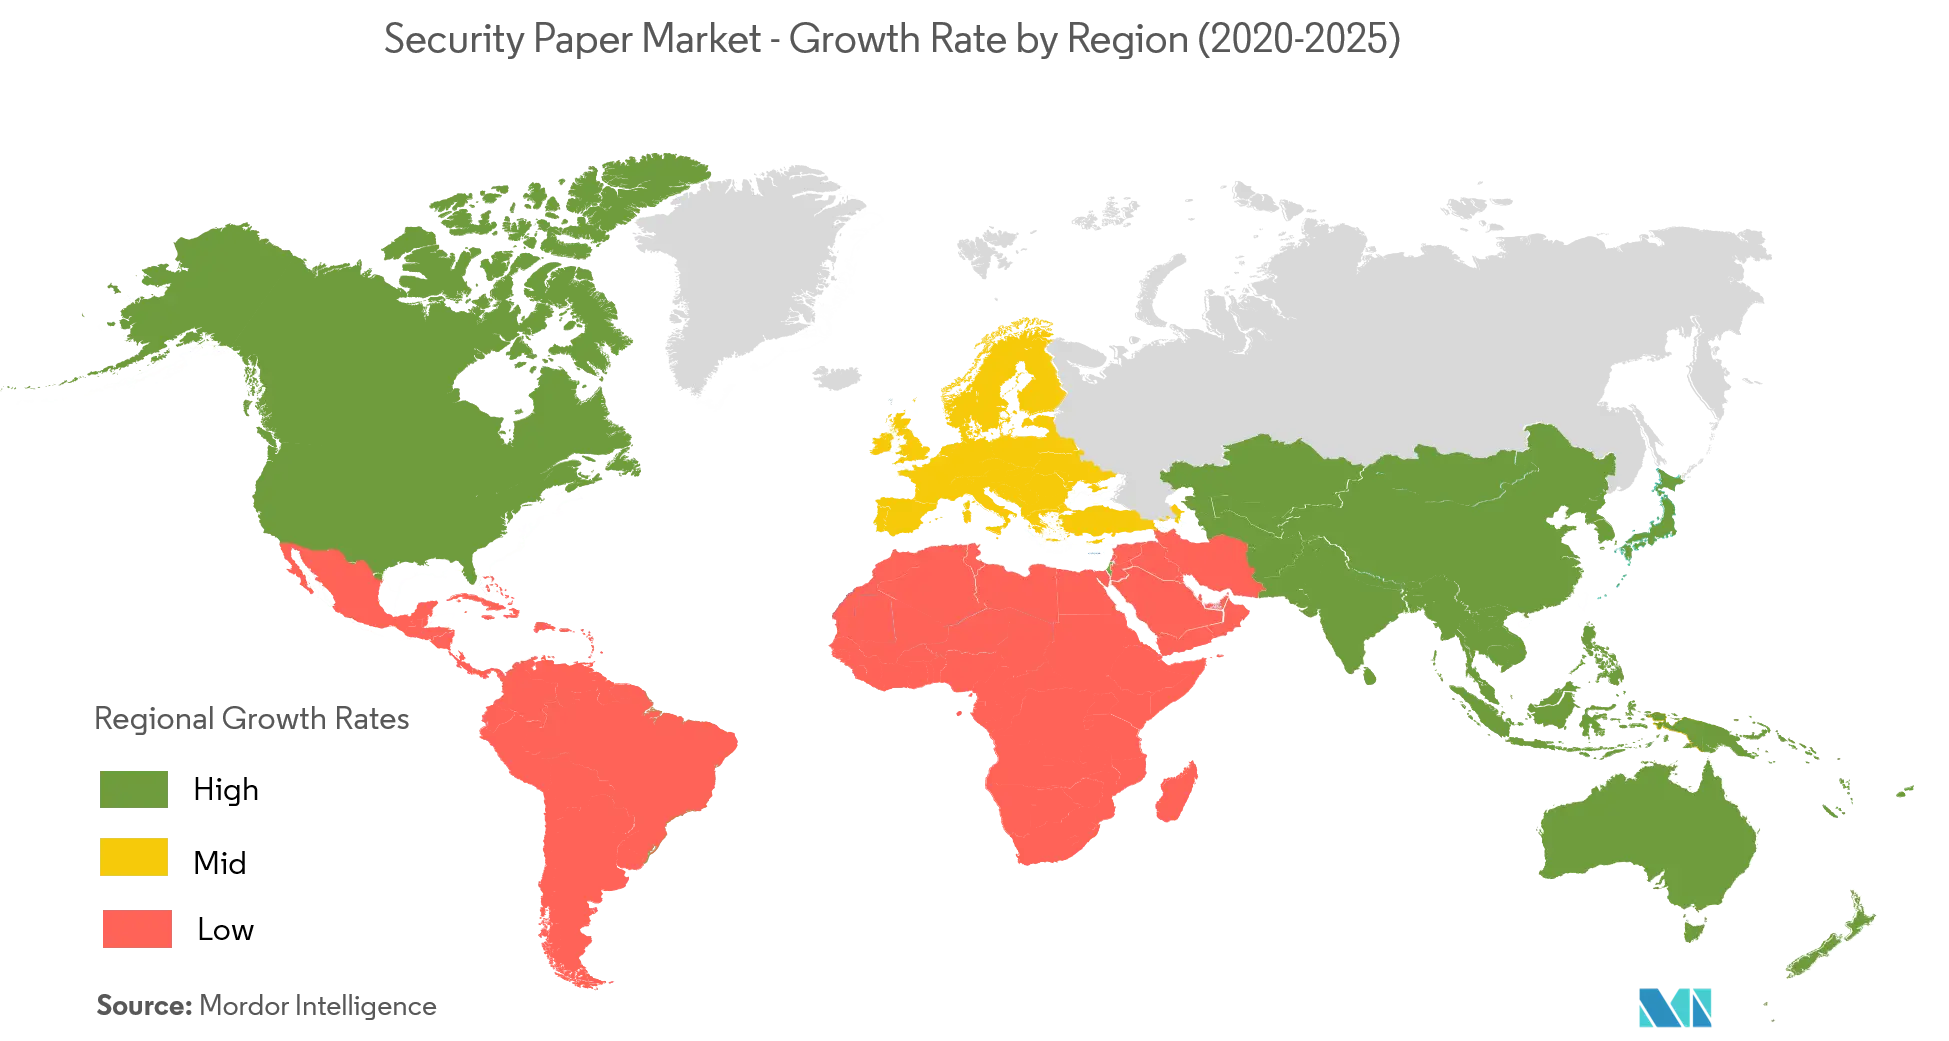 Thị trường giấy bảo mật - Tốc độ tăng trưởng theo khu vực (2020-2025)